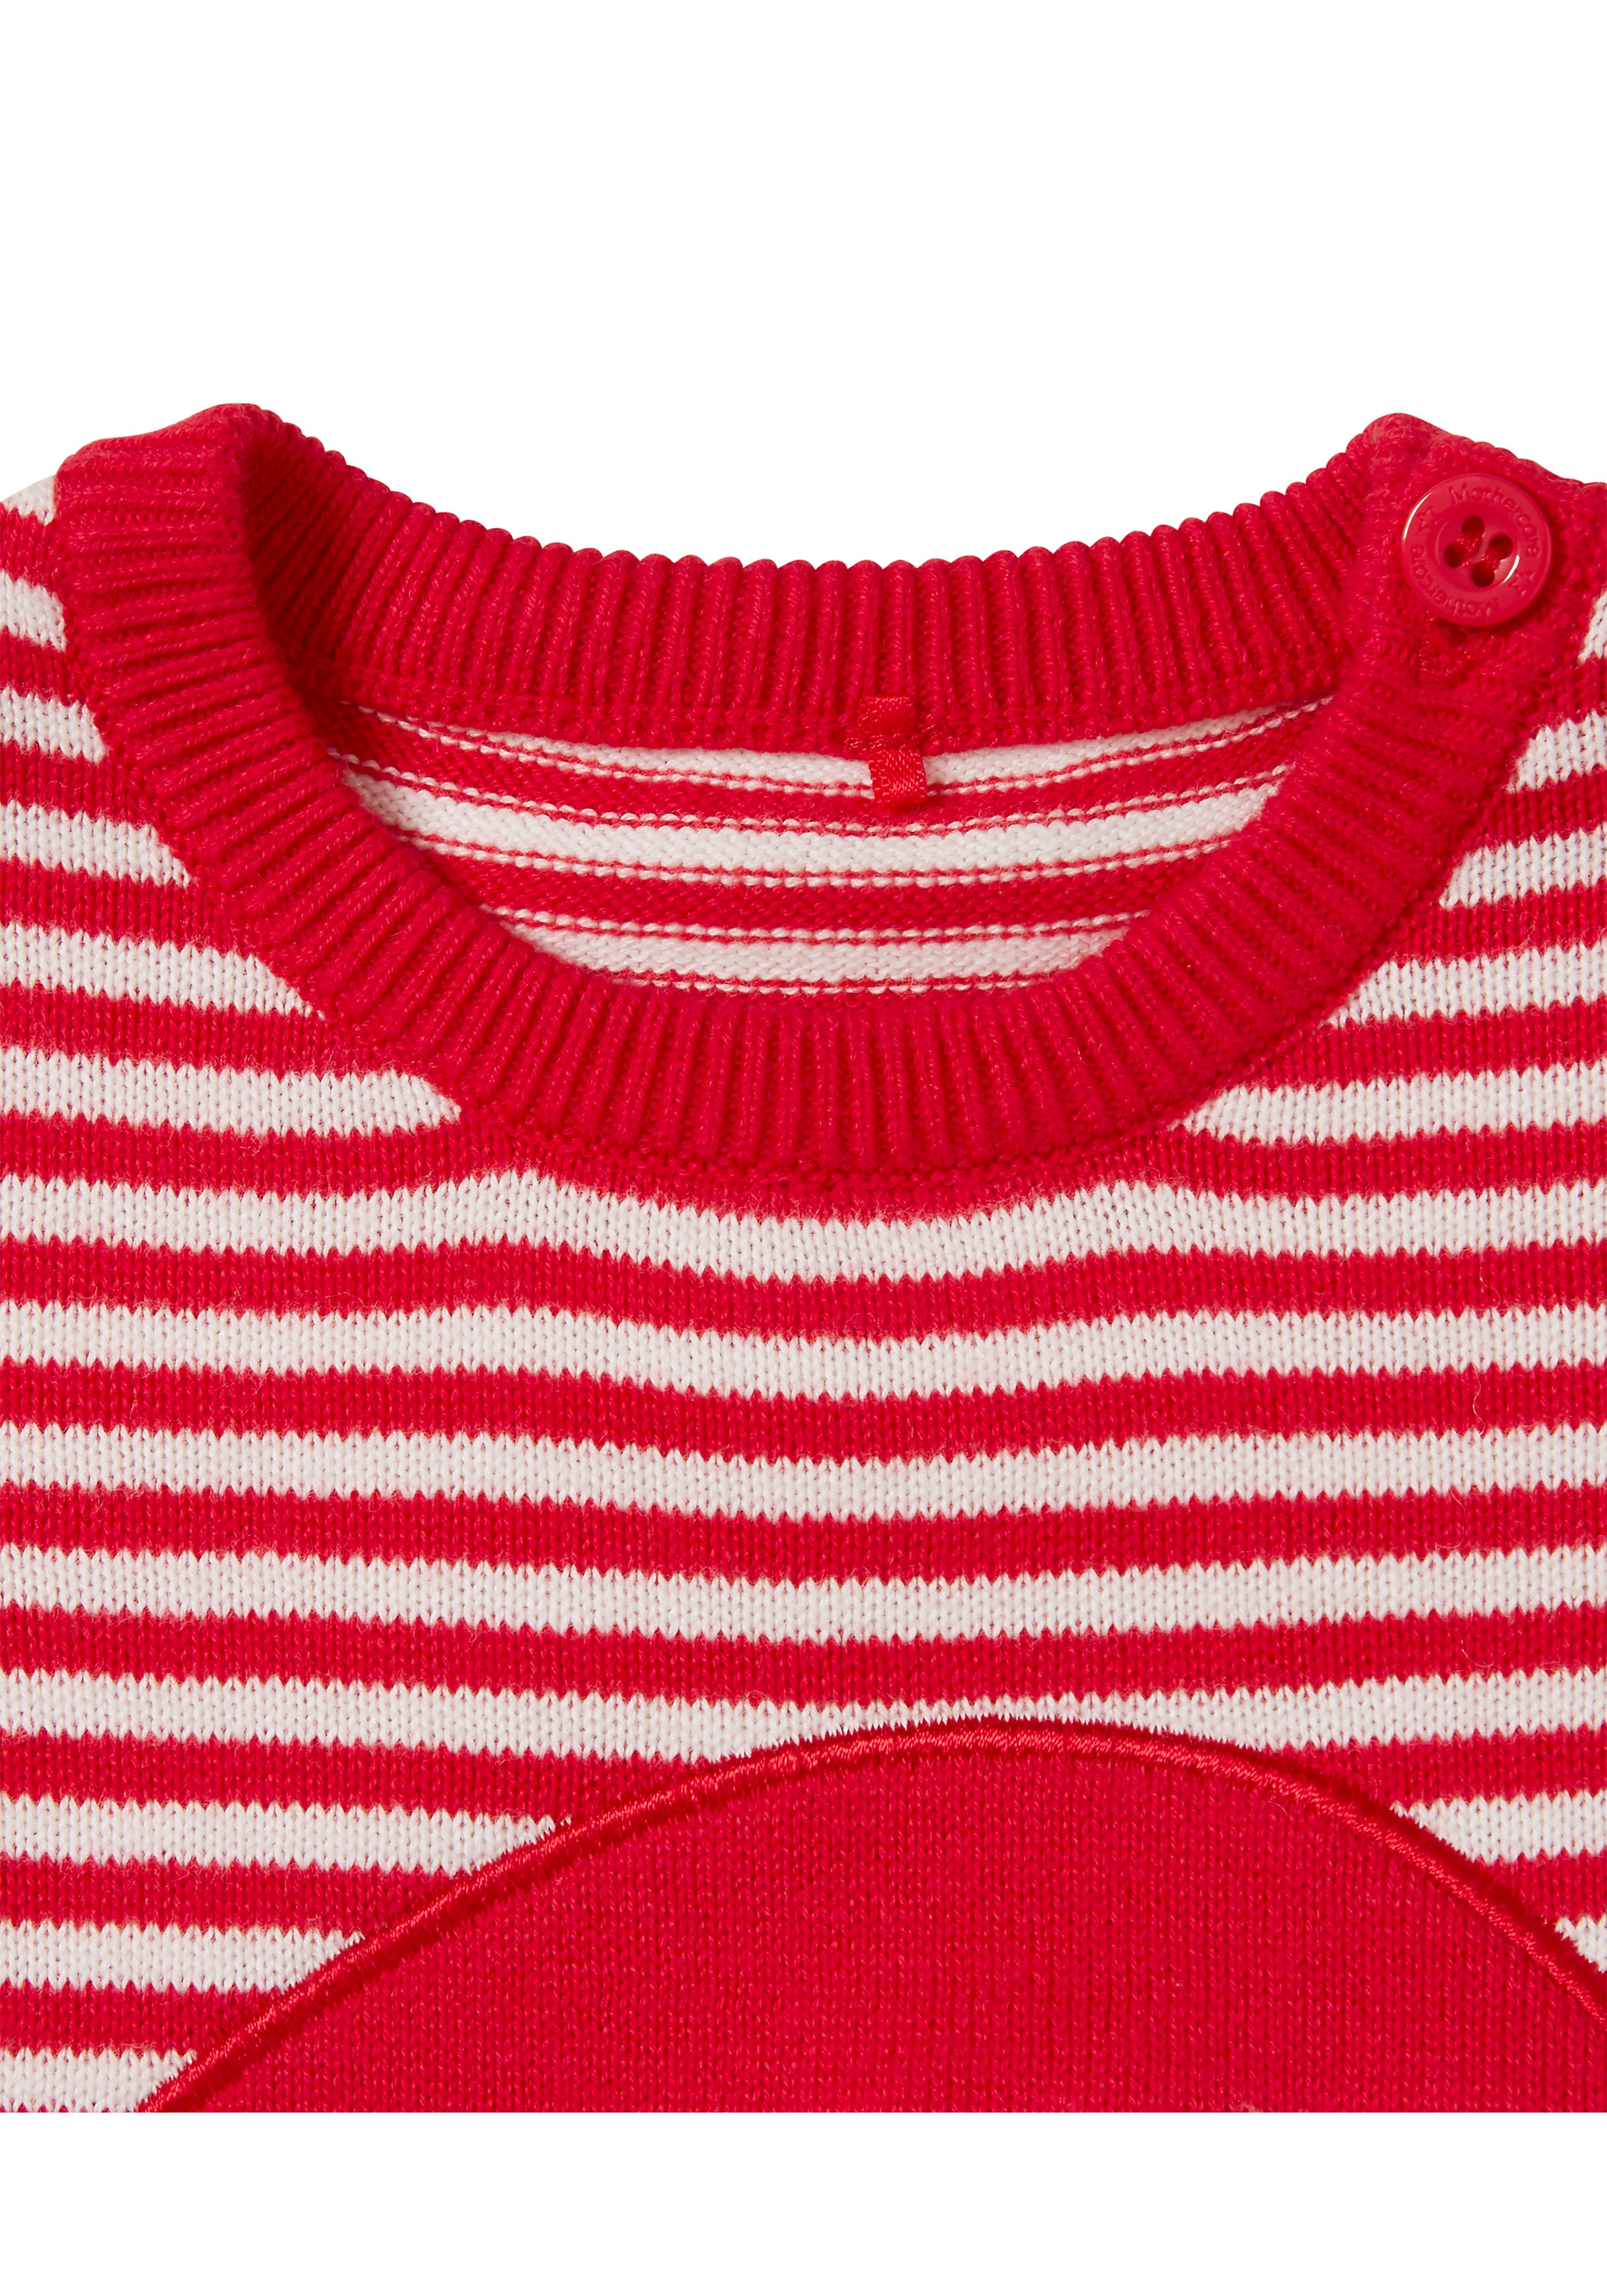 Mothercare | Unisex Full Sleeves Santa Romper - Red